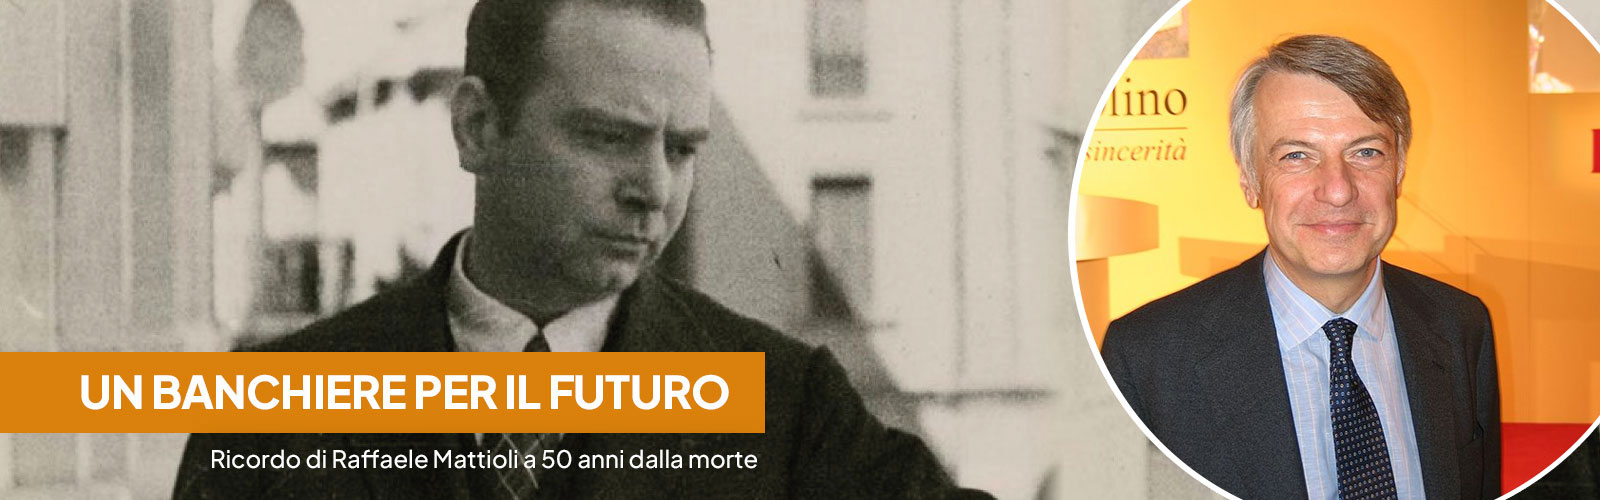 Un banchiere di ieri per gli istituti del futuro. Ricordo di Raffaele Mattioli a 50 anni dalla morte.